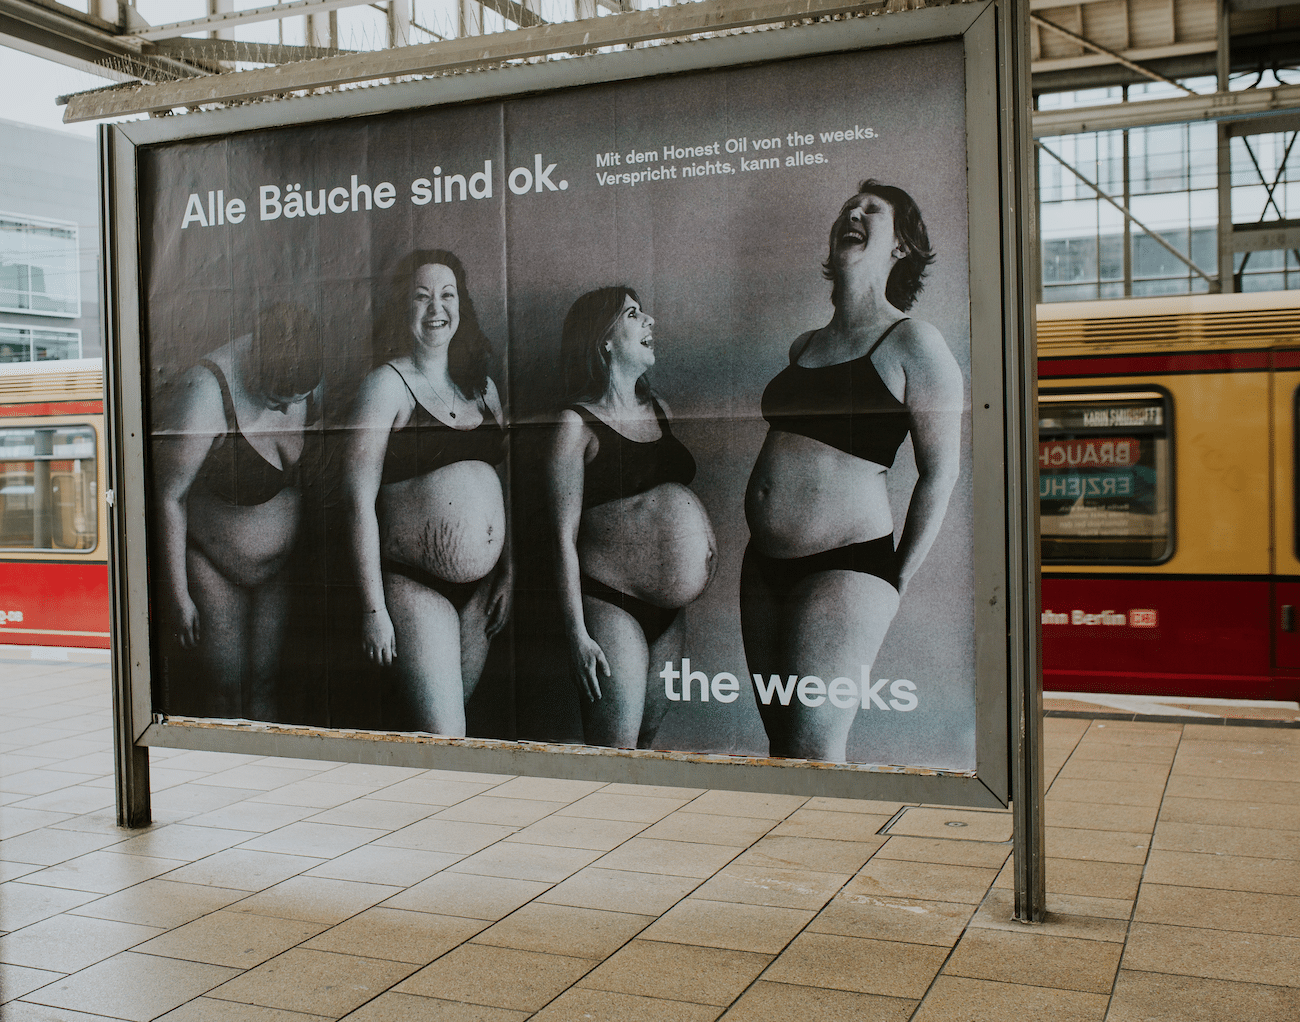 the weeks Plakatdesign und (s/w) Fotokampagne am Berliner Alexanderplatz, 4 schwangere Models und Schrift Alle Bäuche sind ok